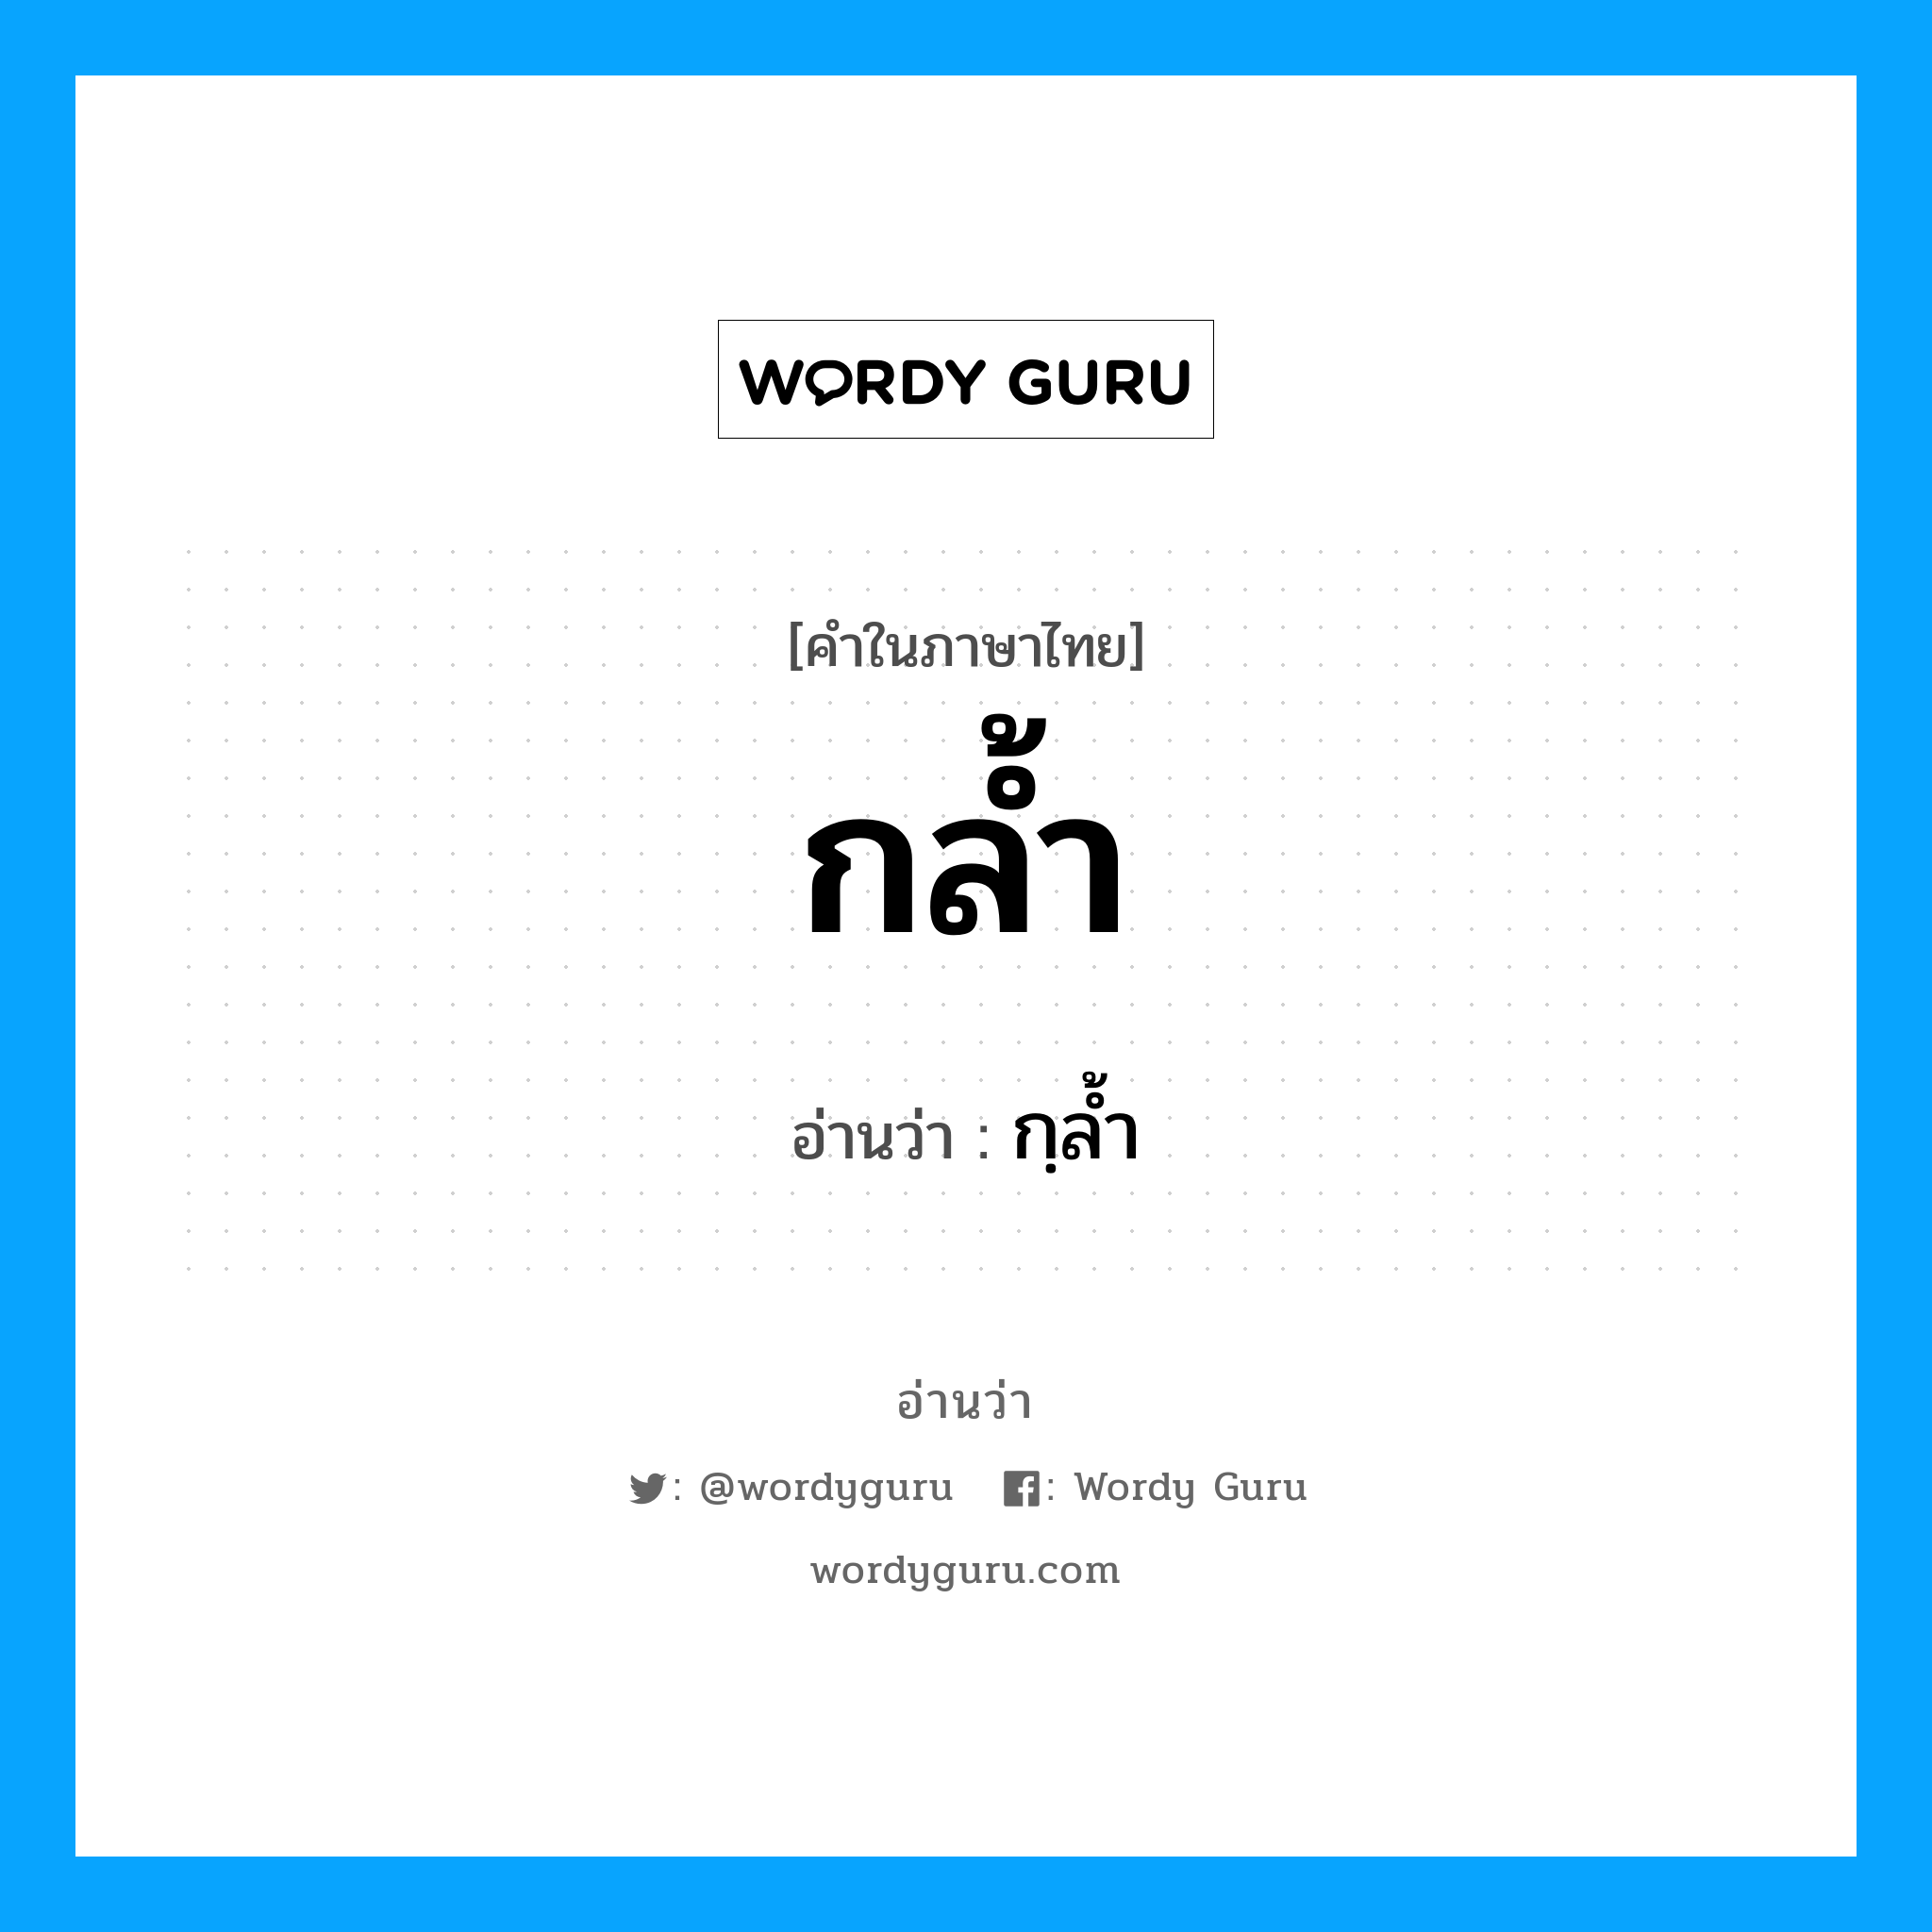 กฺลํ้า เป็นคำอ่านของคำไหน?, คำในภาษาไทย กฺลํ้า อ่านว่า กล้ำ